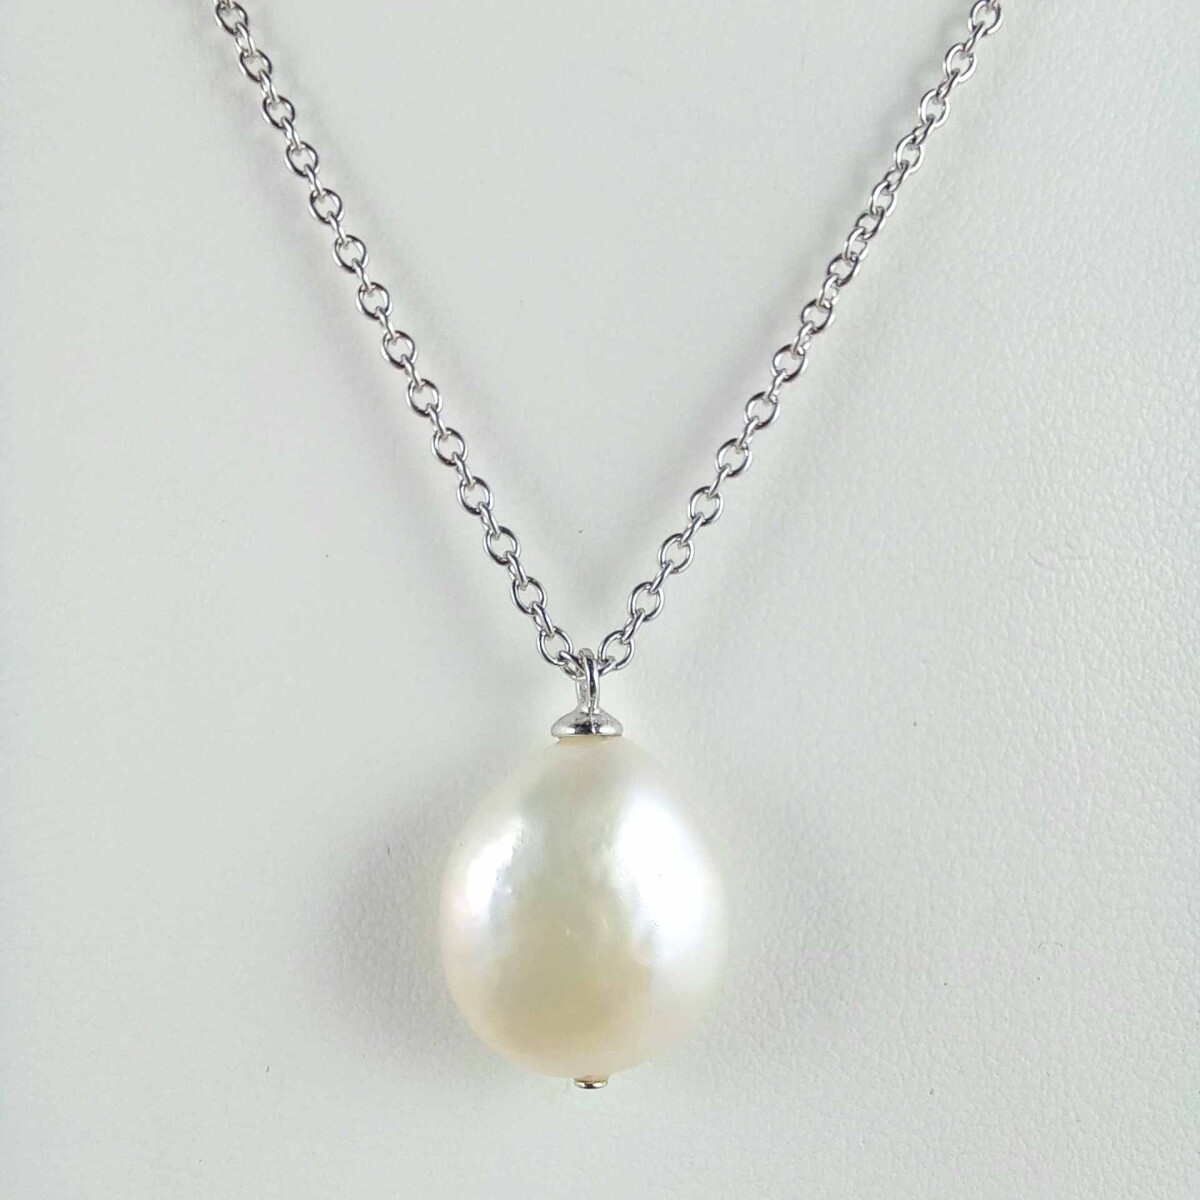 Cadena de plata 925 con perla barroca. 